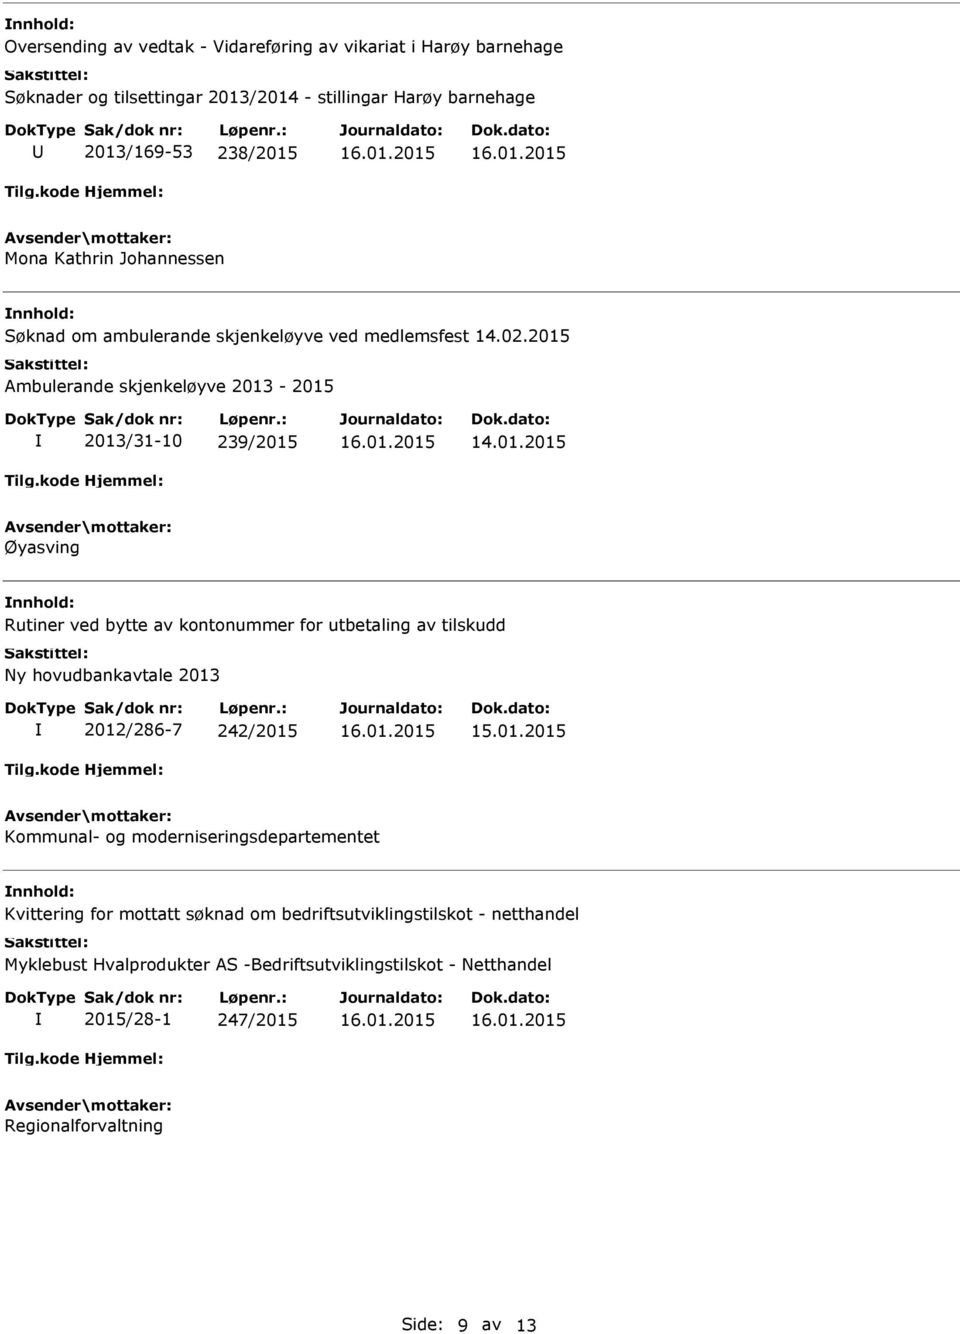 2015 Ambulerande skjenkeløyve 2013-2015 2013/31-10 239/2015 Øyasving Rutiner ved bytte av kontonummer for utbetaling av tilskudd Ny hovudbankavtale 2013